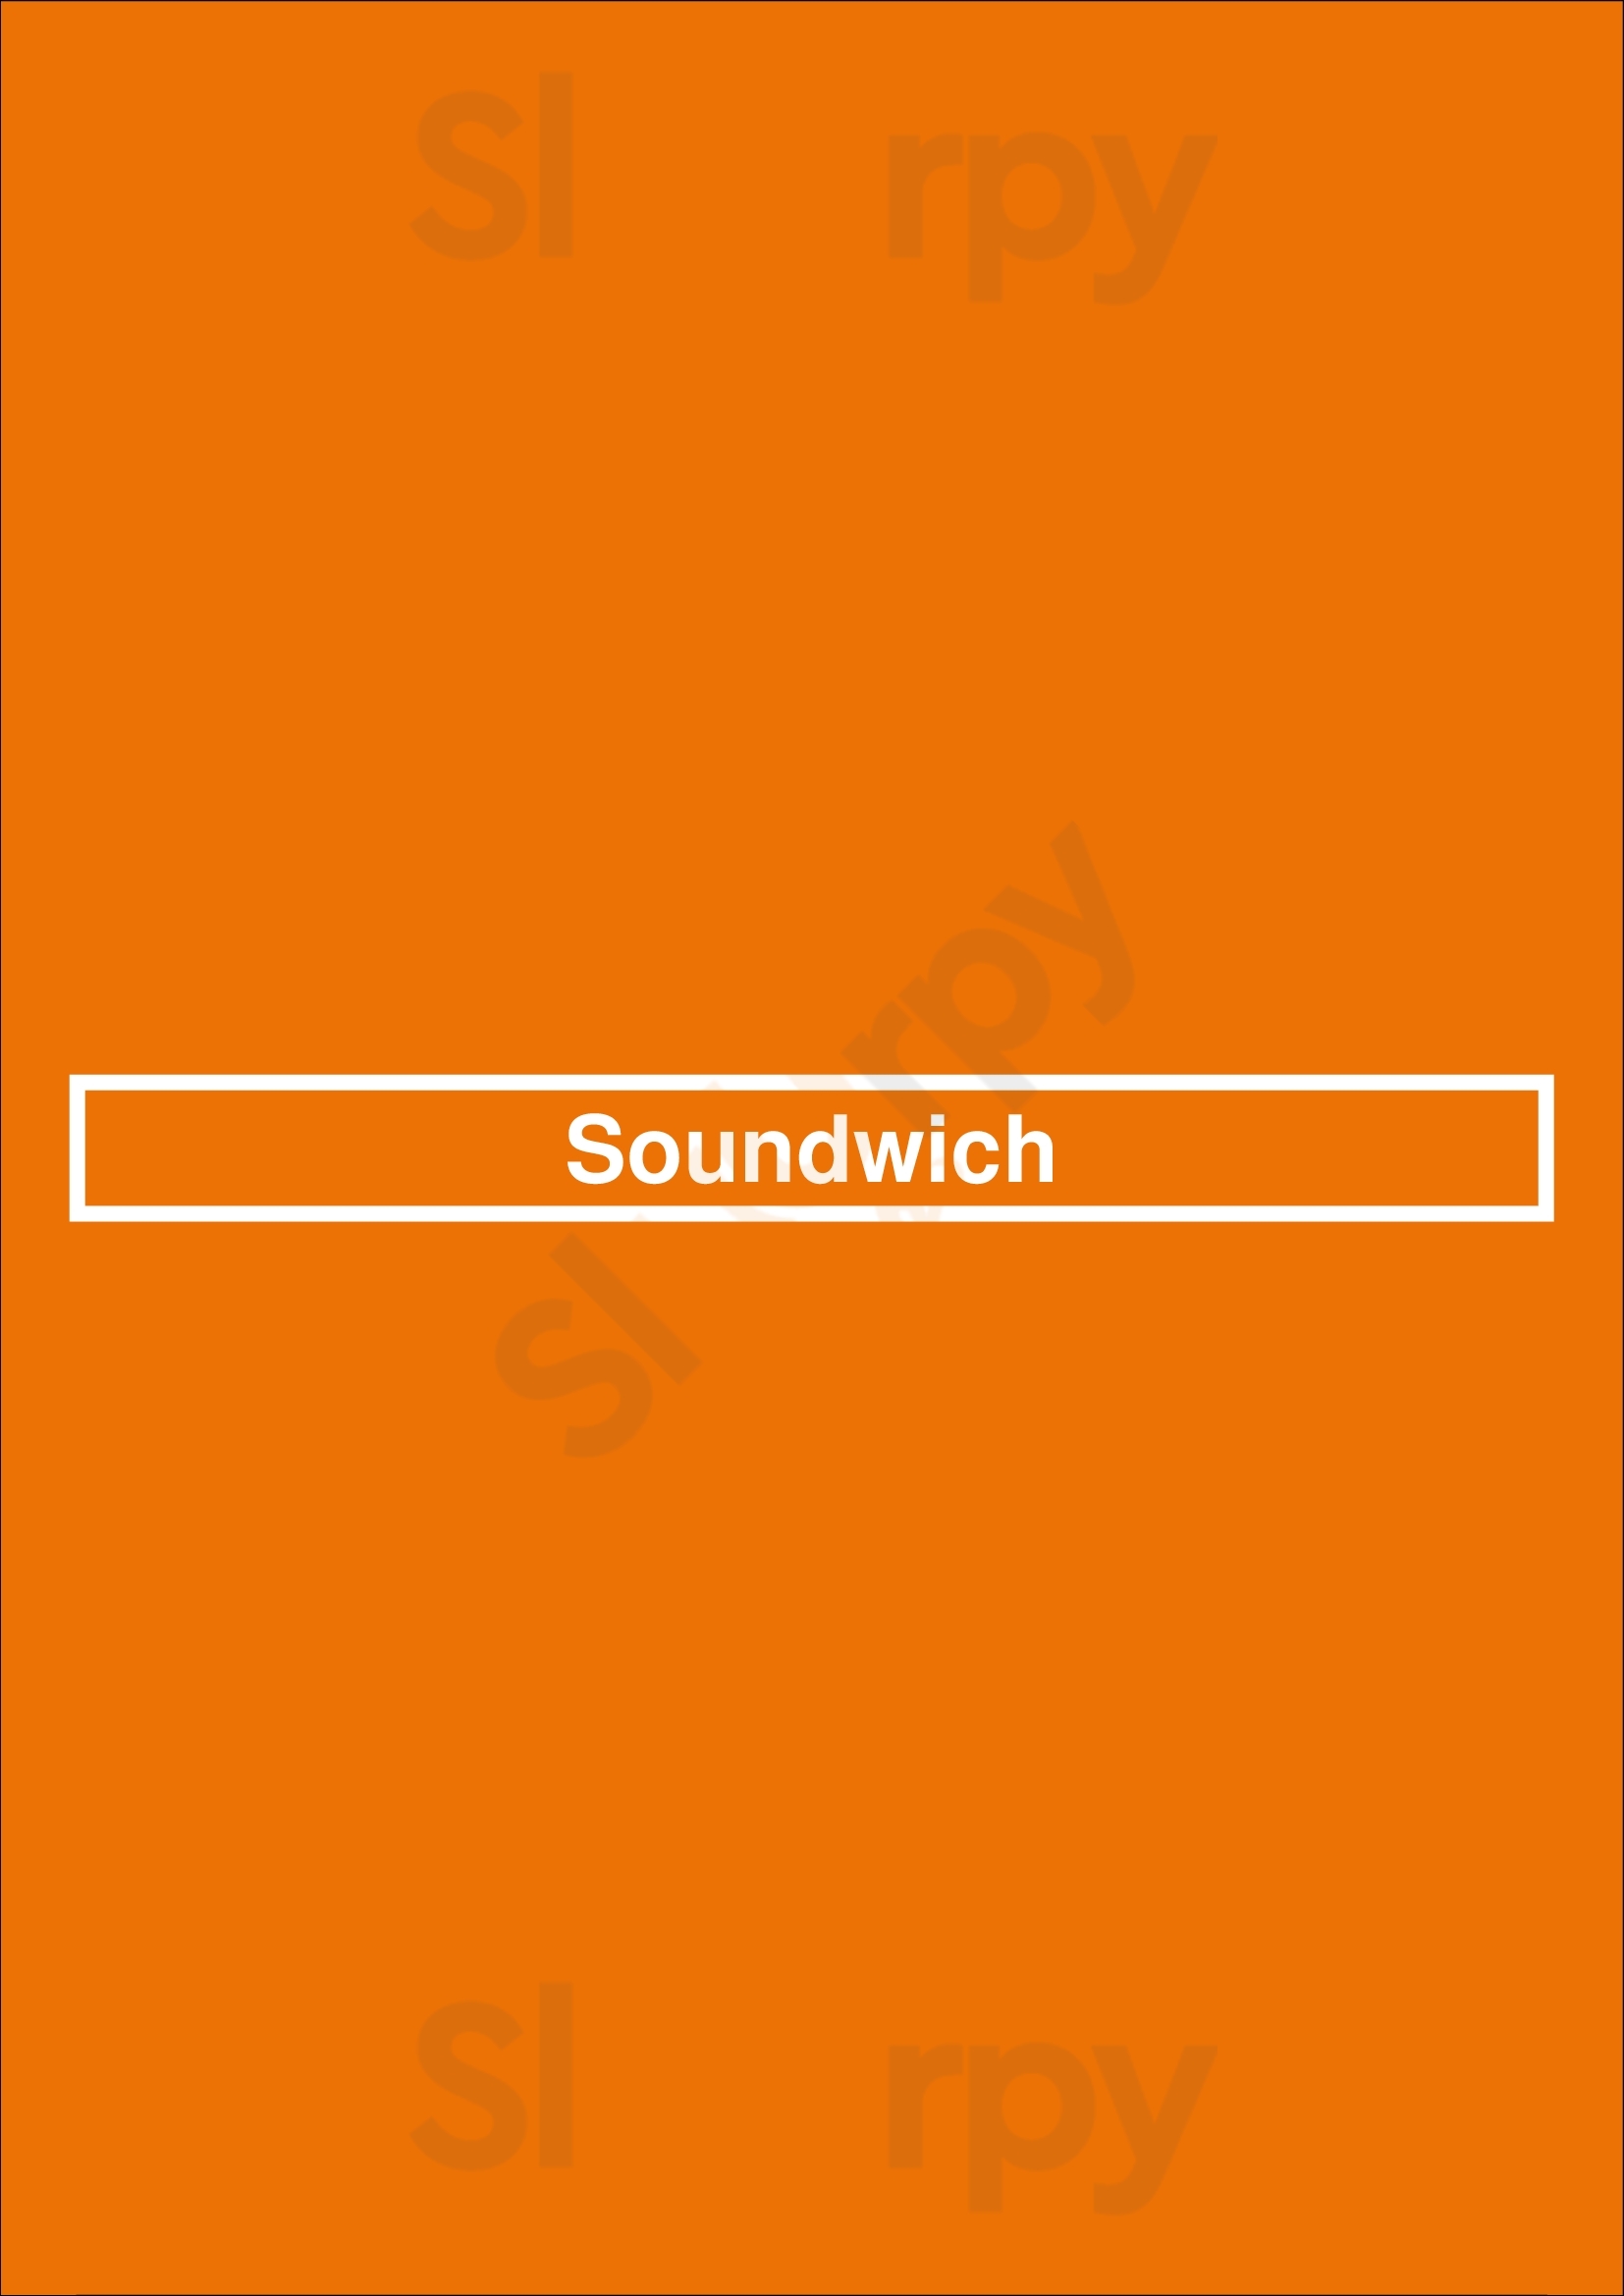 Soundwich Porto Menu - 1